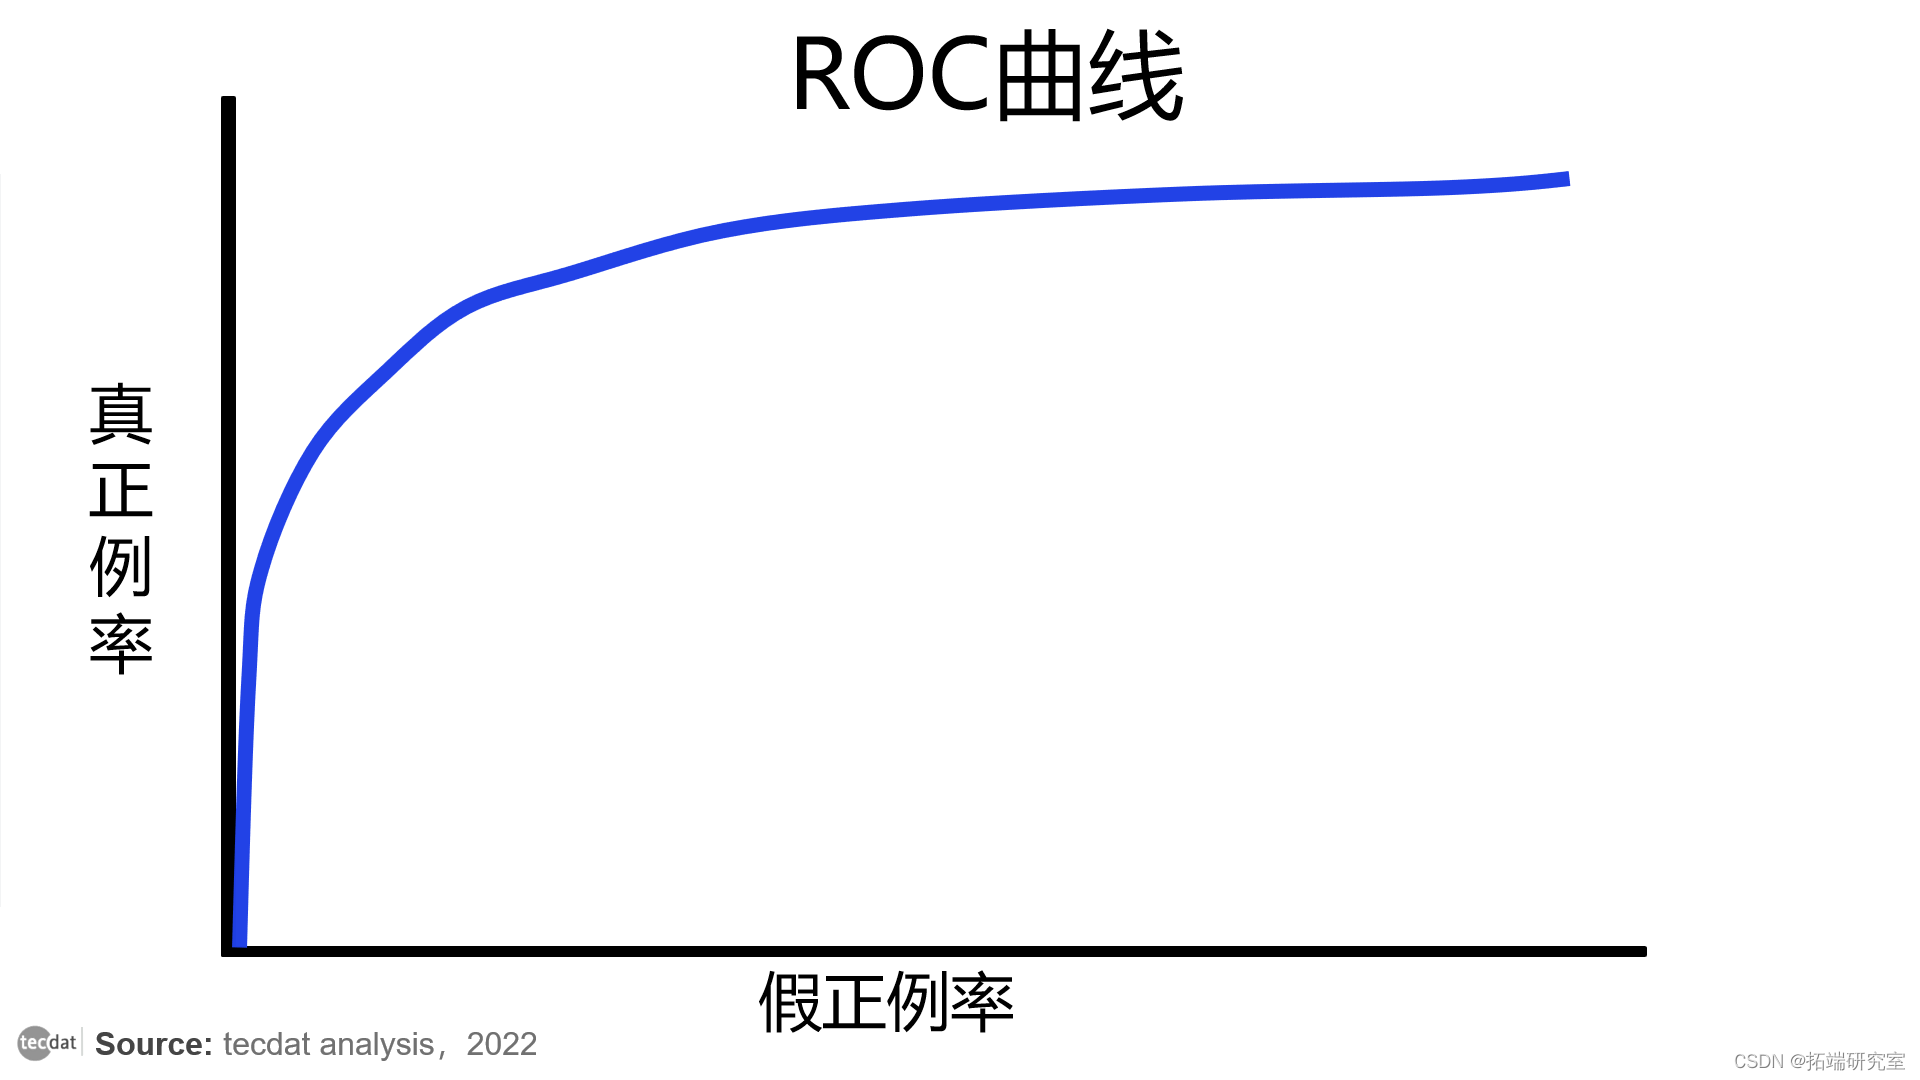 视频|分类模型评估:精确率、召回率、ROC曲线、AUC与R语言生存分析时间依赖性ROC实现|附代码数据_ML_04